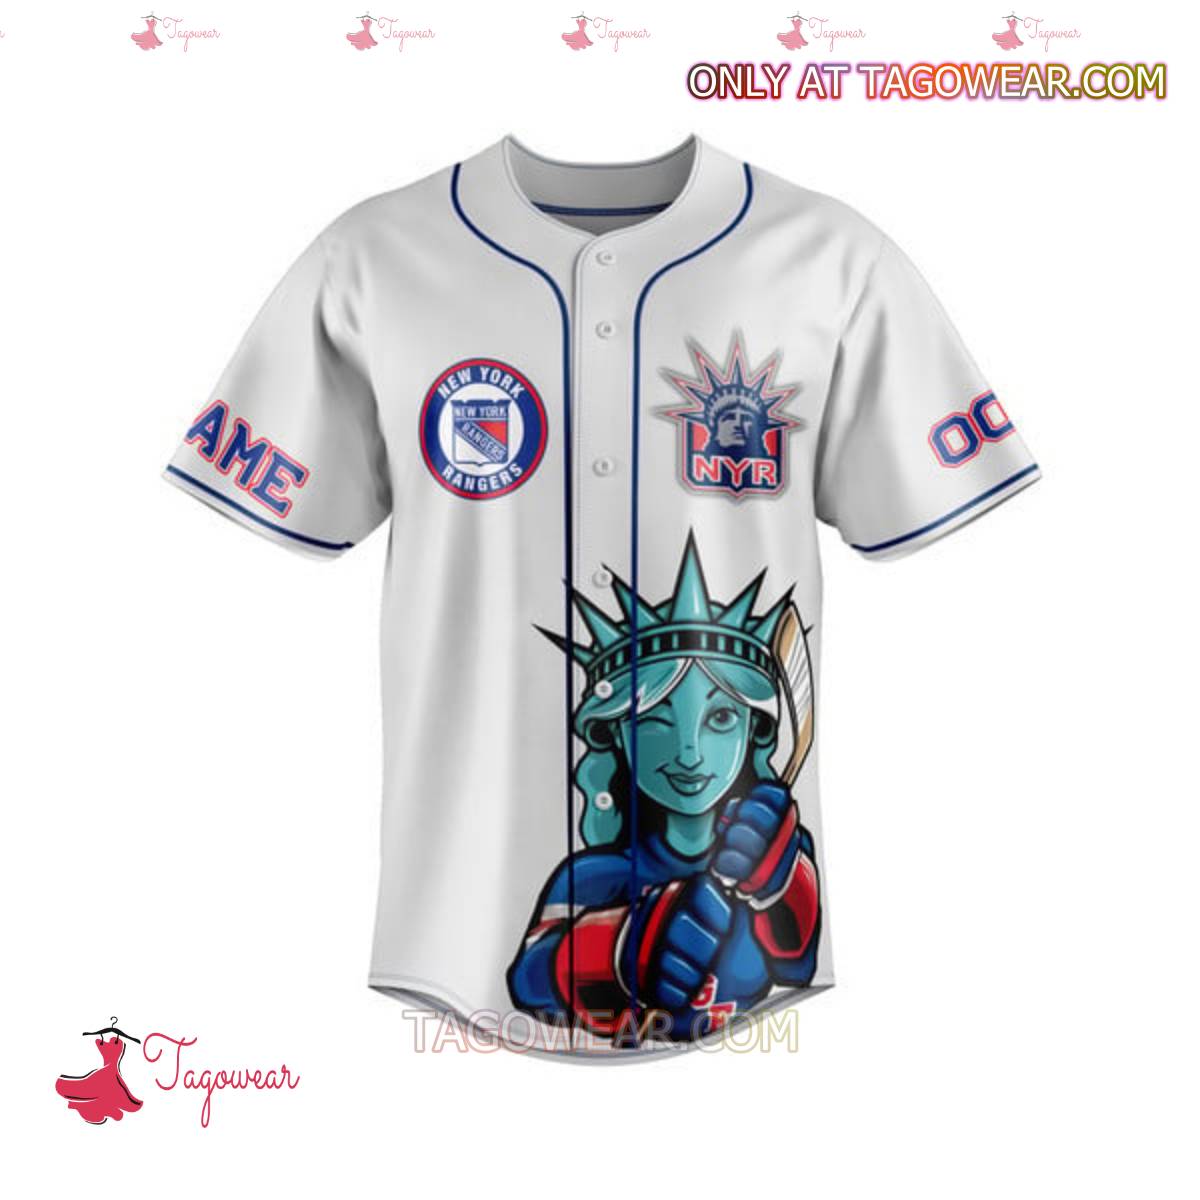 New York Rangers Broadway Blueshirts Personalized Baseball Jersey a